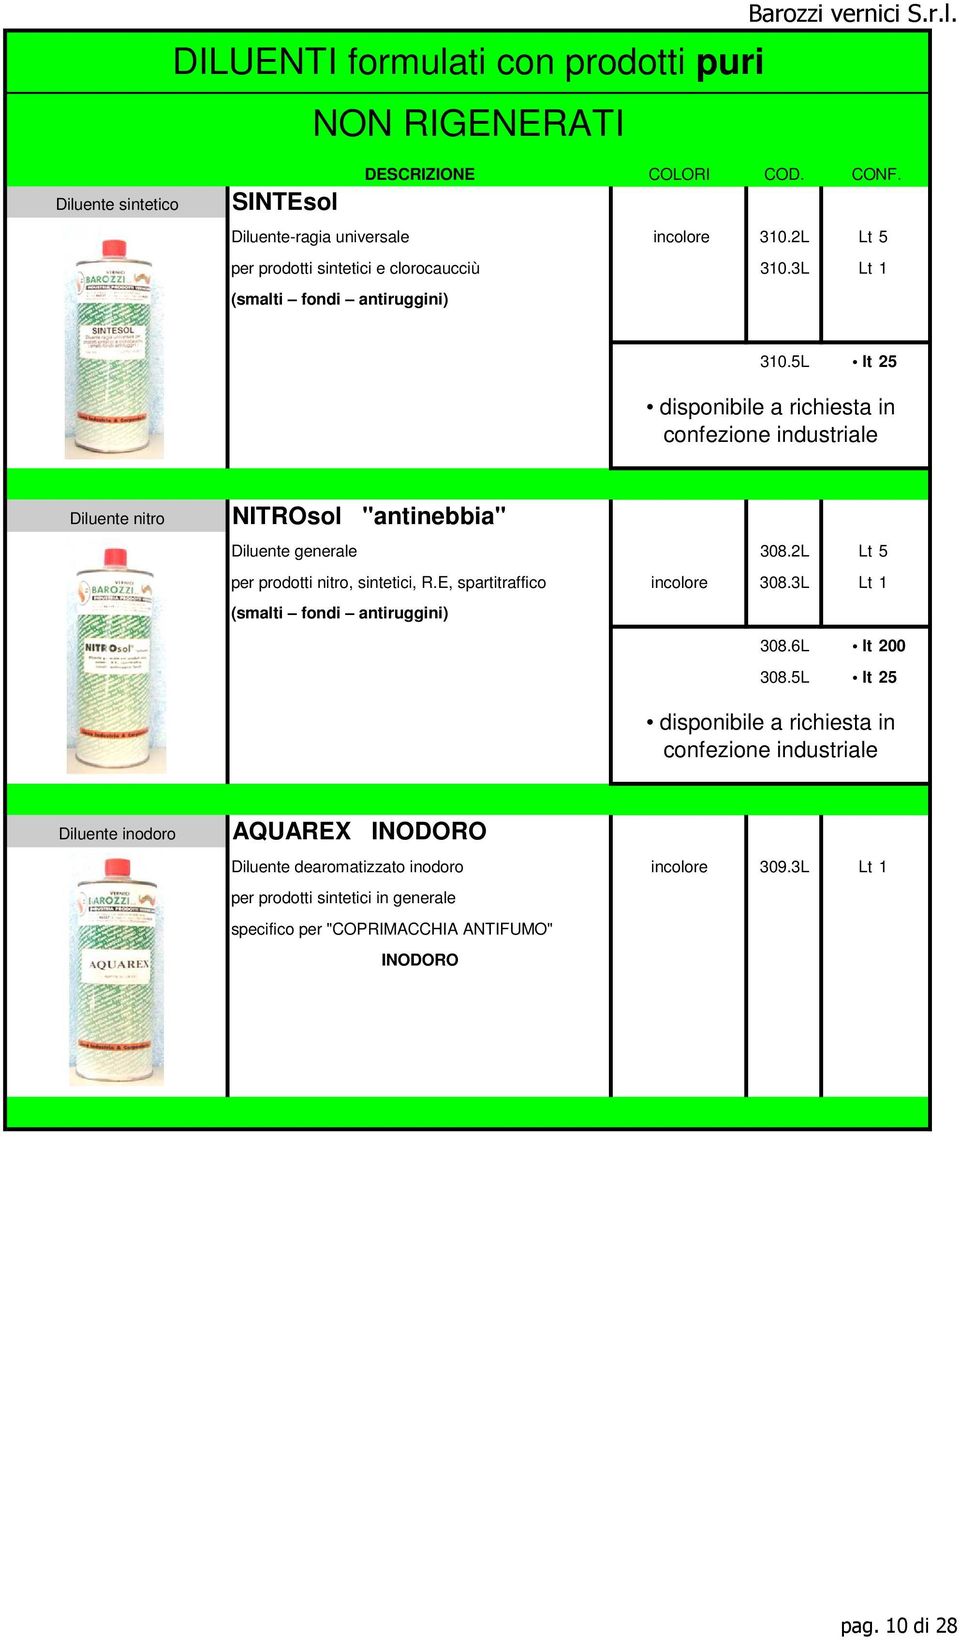 2L Lt 5 per prodotti nitro, sintetici, R.E, spartitraffico incolore 308.3L Lt 1 (smalti fondi antiruggini) 308.6L lt 200 308.